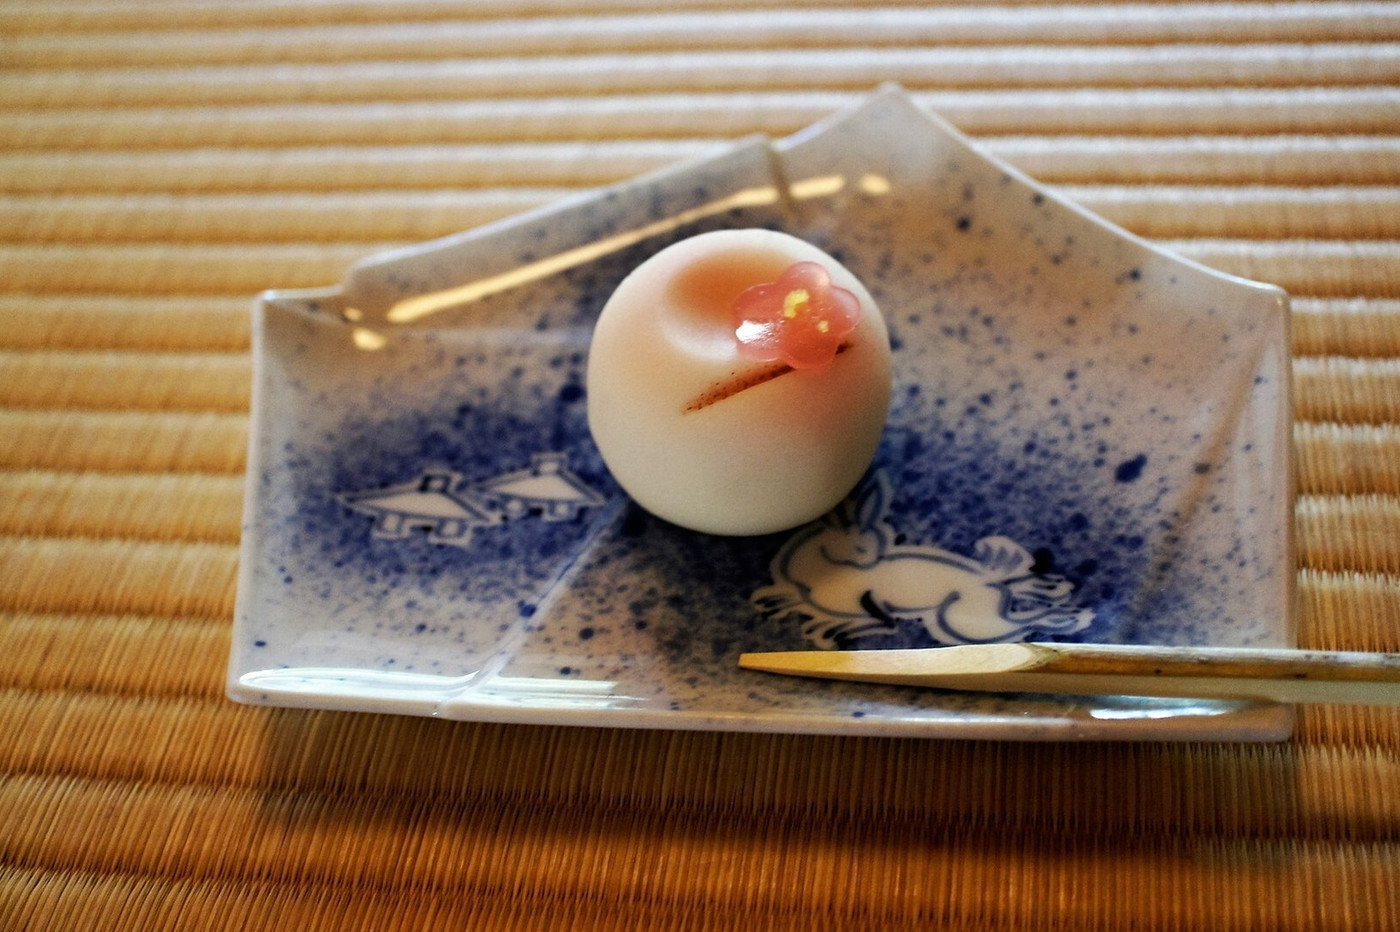 「時雨亭」料理 45239 抹茶セットの生菓子